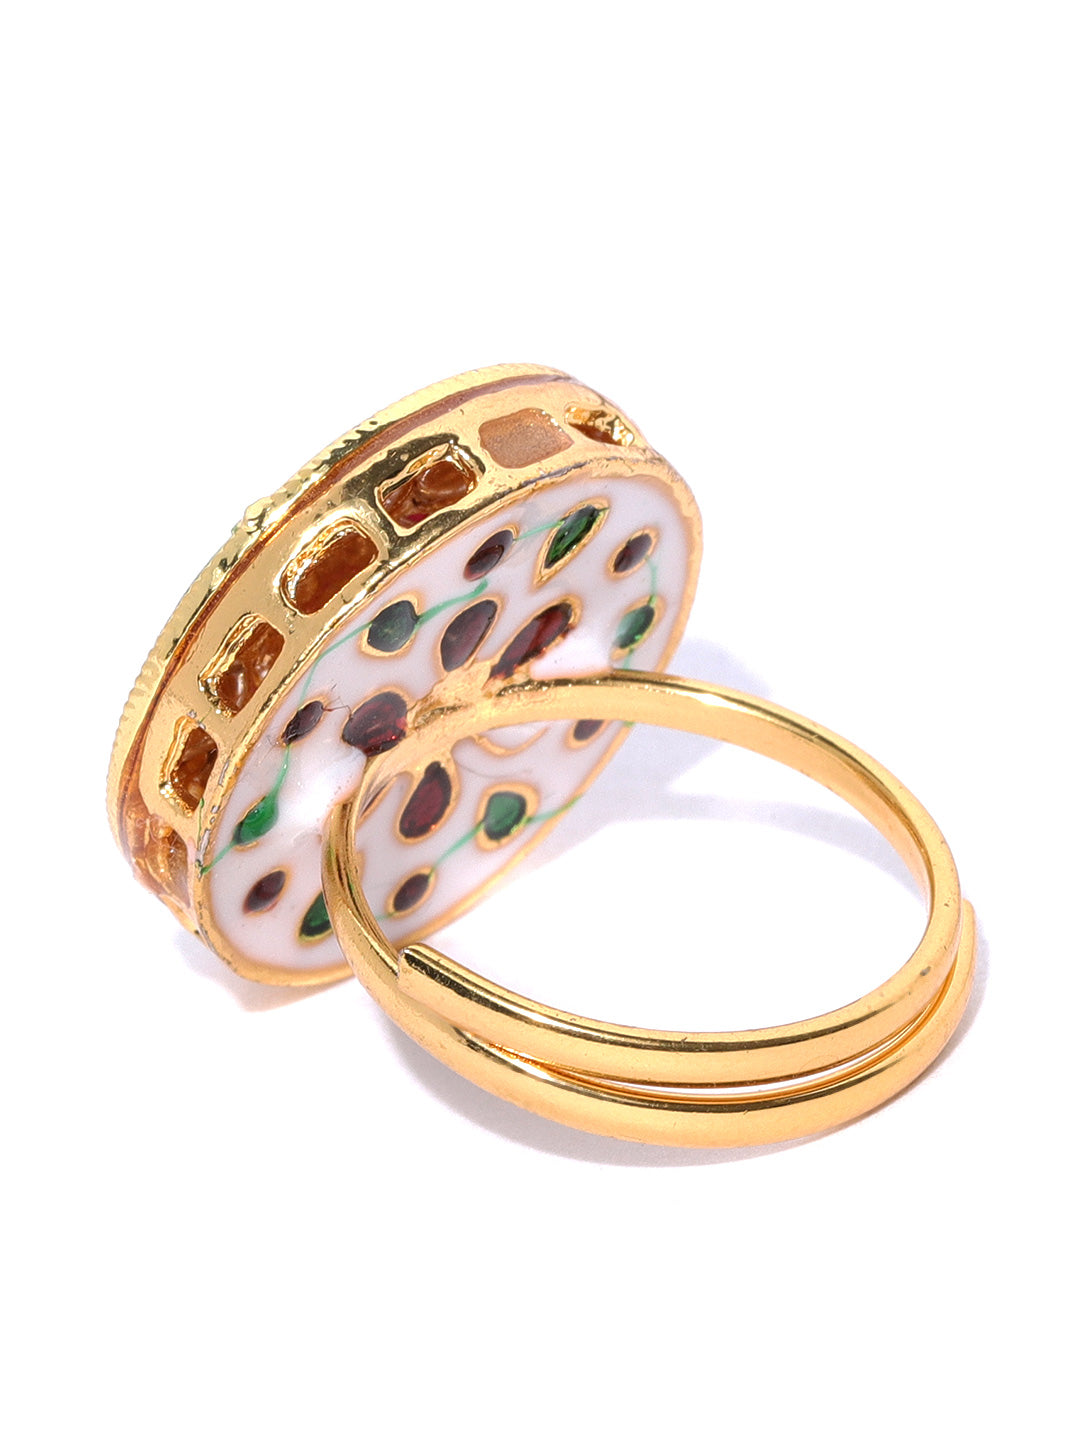 Stuller Rosary Ring R16644:166293:P 10KY - Rings | Jewelry Design Studio |  Jensen Beach, FL